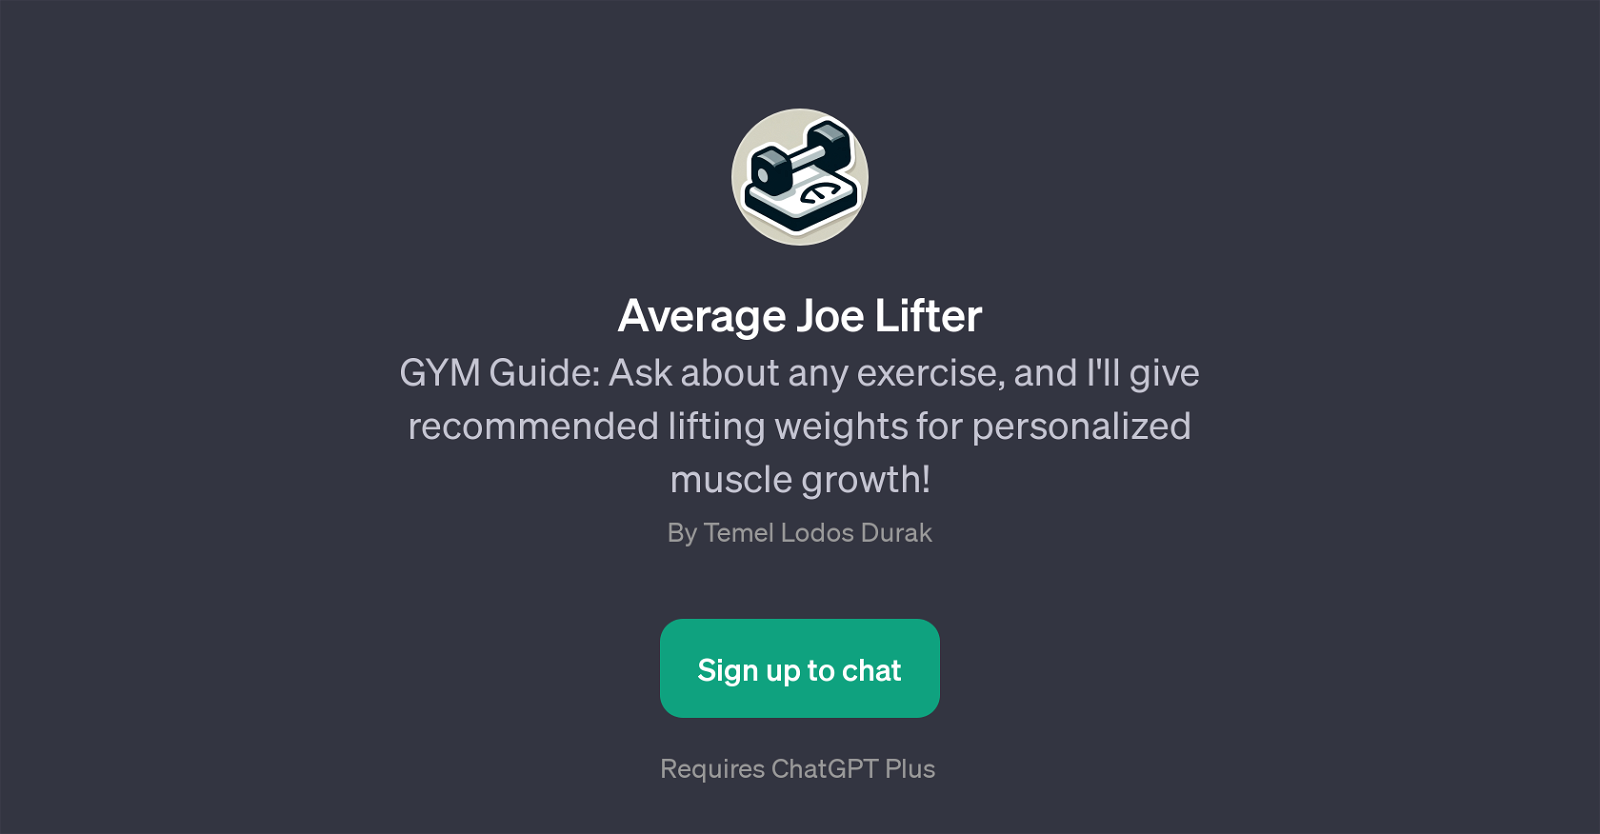 Average Joe Lifter website